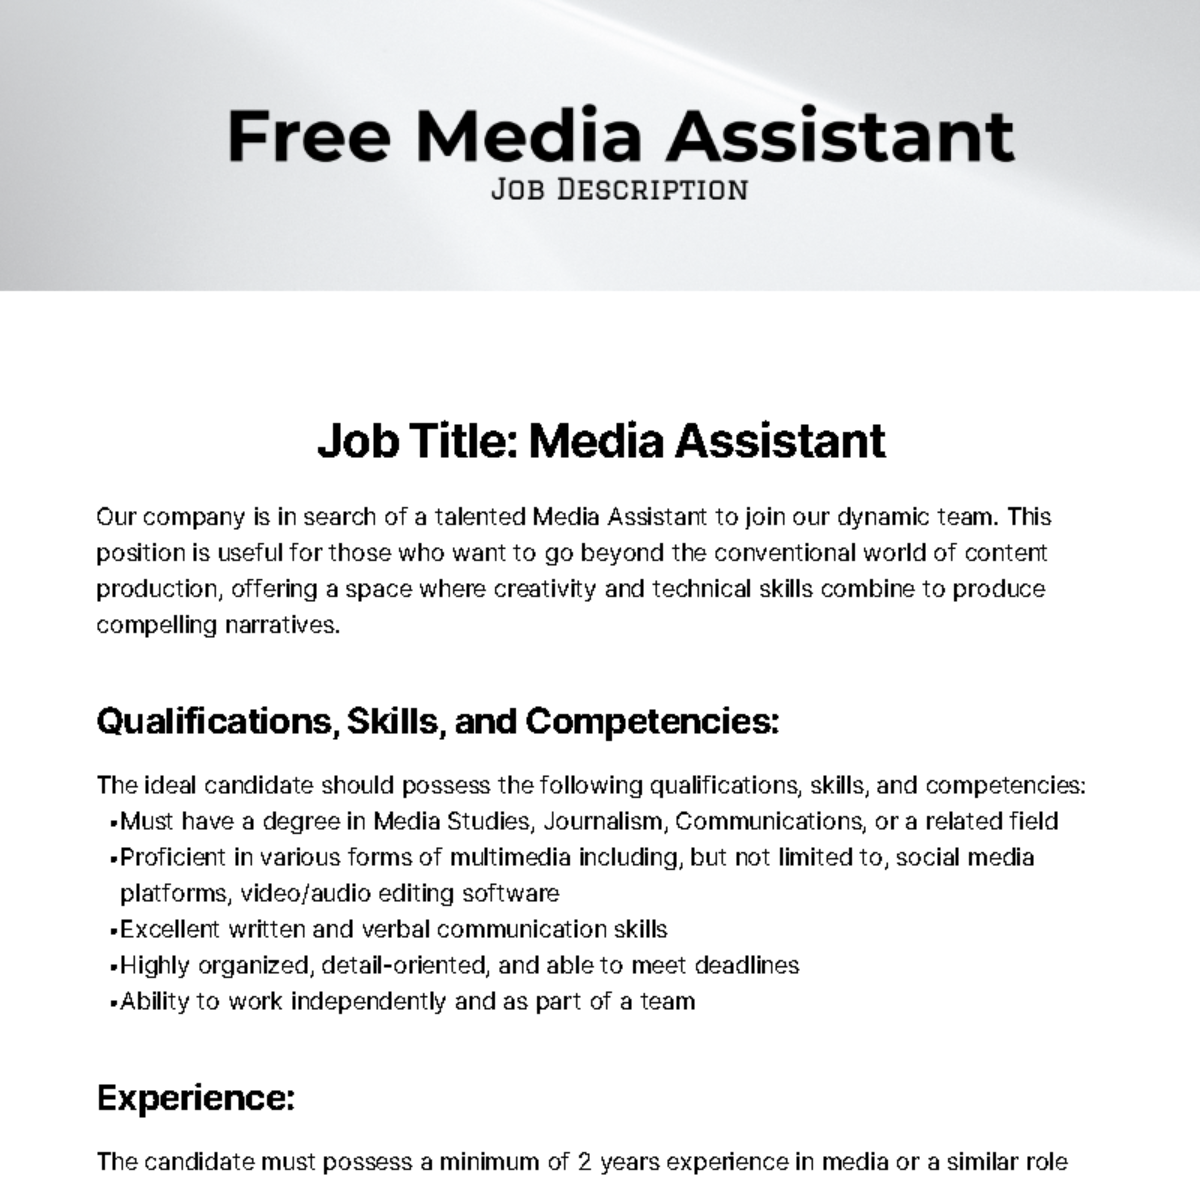 Free Media Assistant Job Description Template